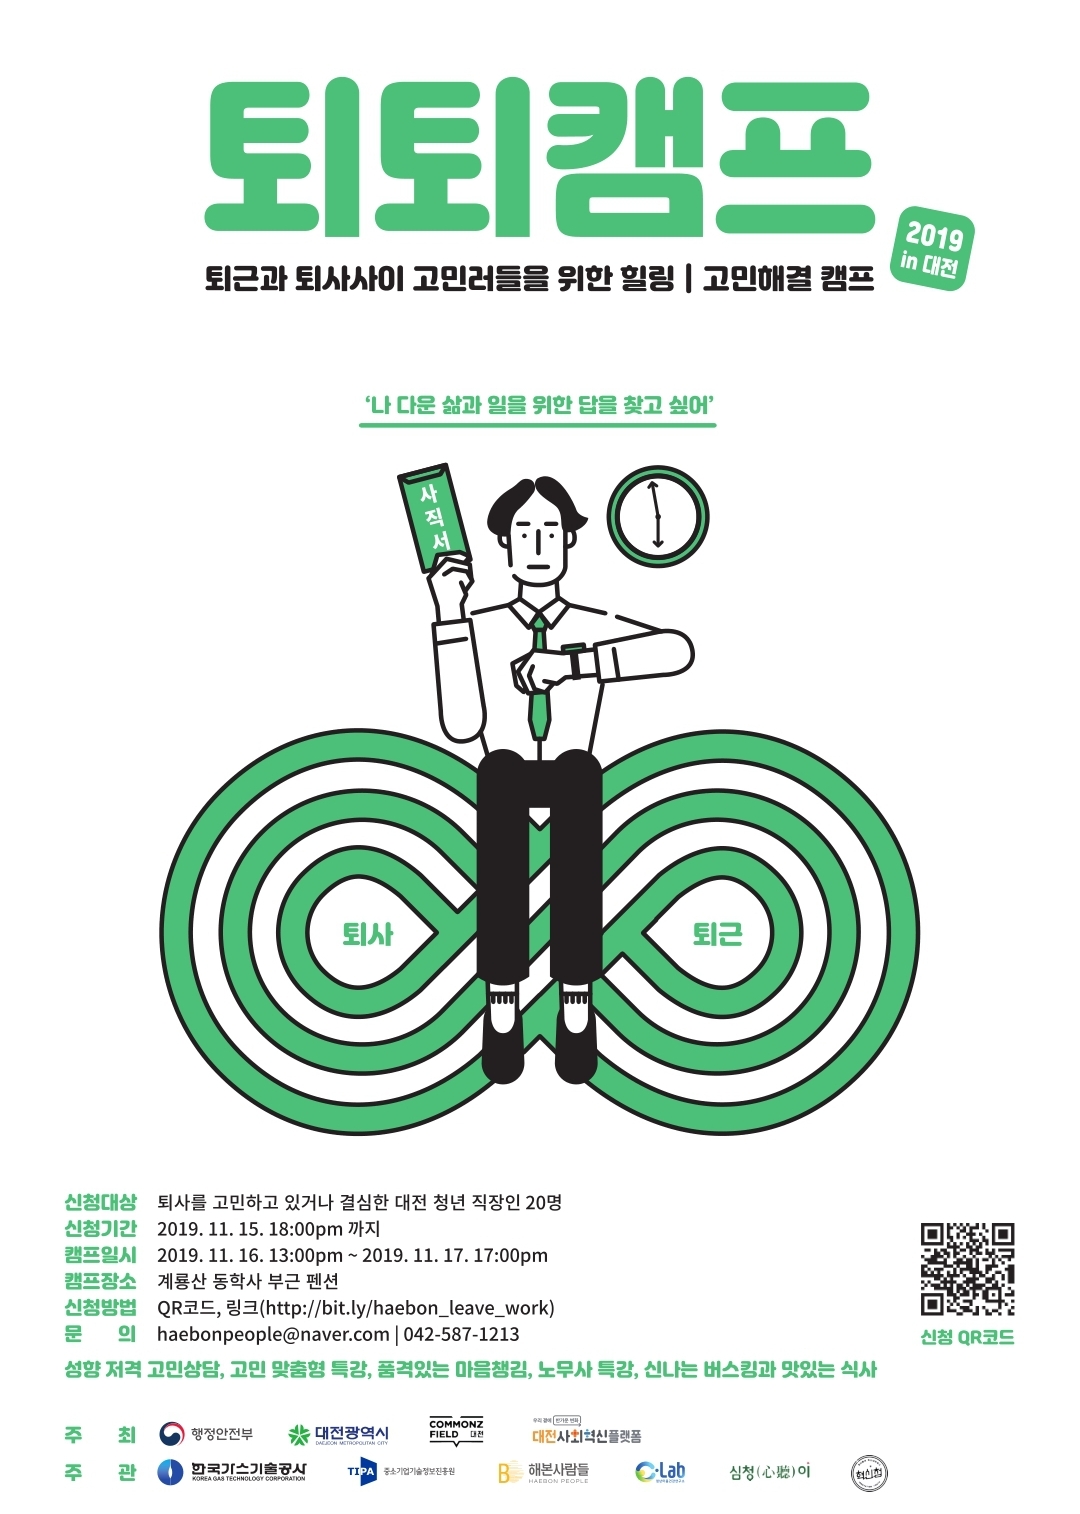 민·관·공 협업「퇴퇴캠프(퇴사학교)」공동 개최